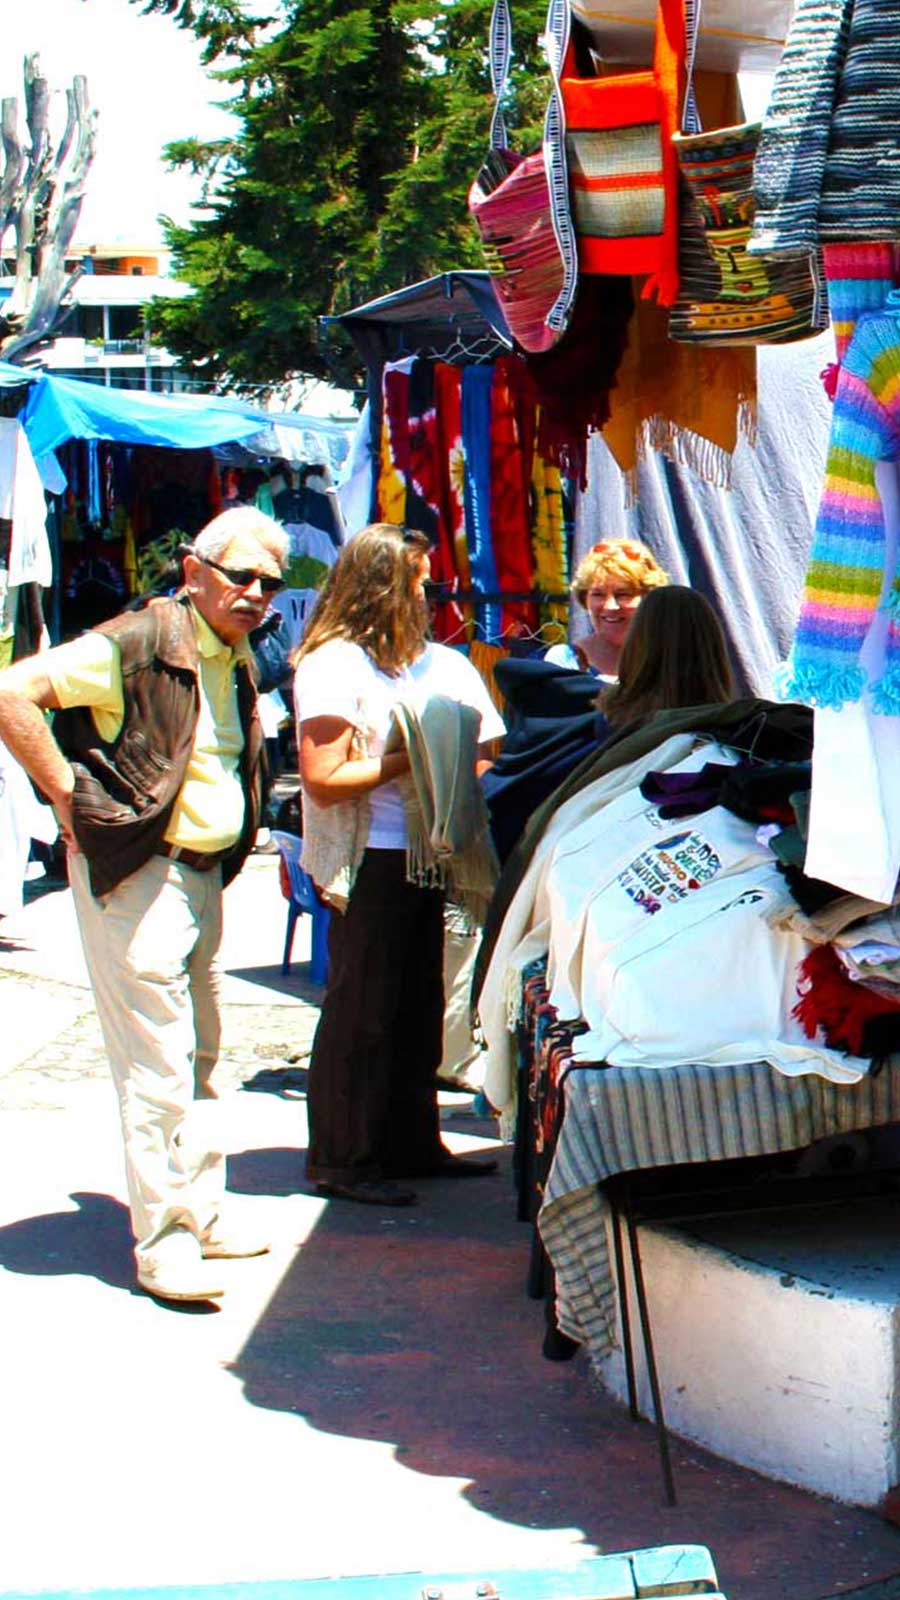 The Saturday crafts market in Otavalo, Ecuador